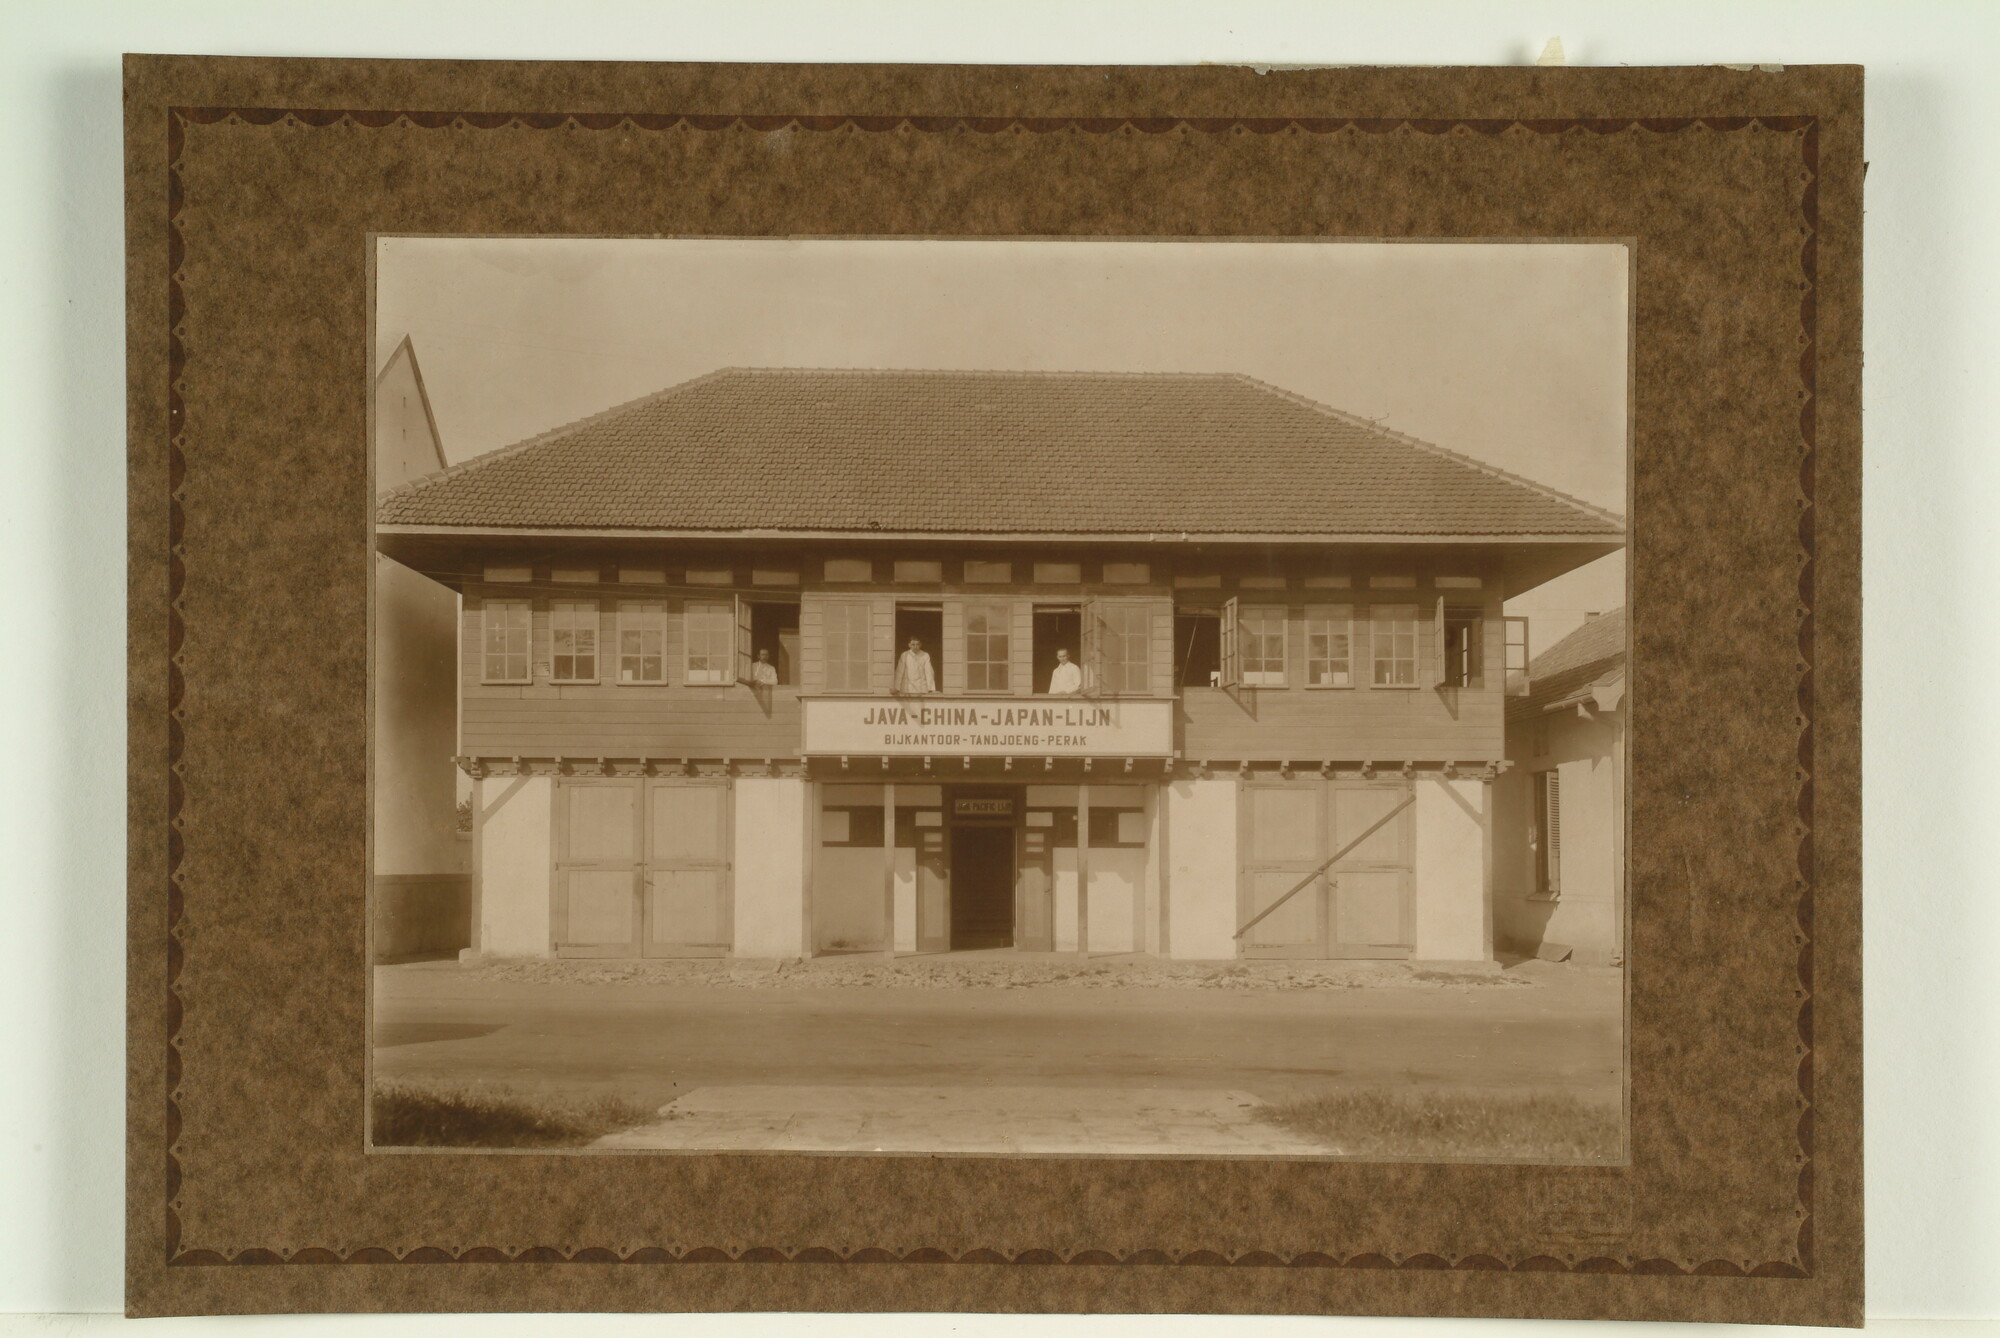 1996.1614; Het bijkantoor van de Java China Japan Lijn te Tandjoeng Perak (Soerabaja); foto